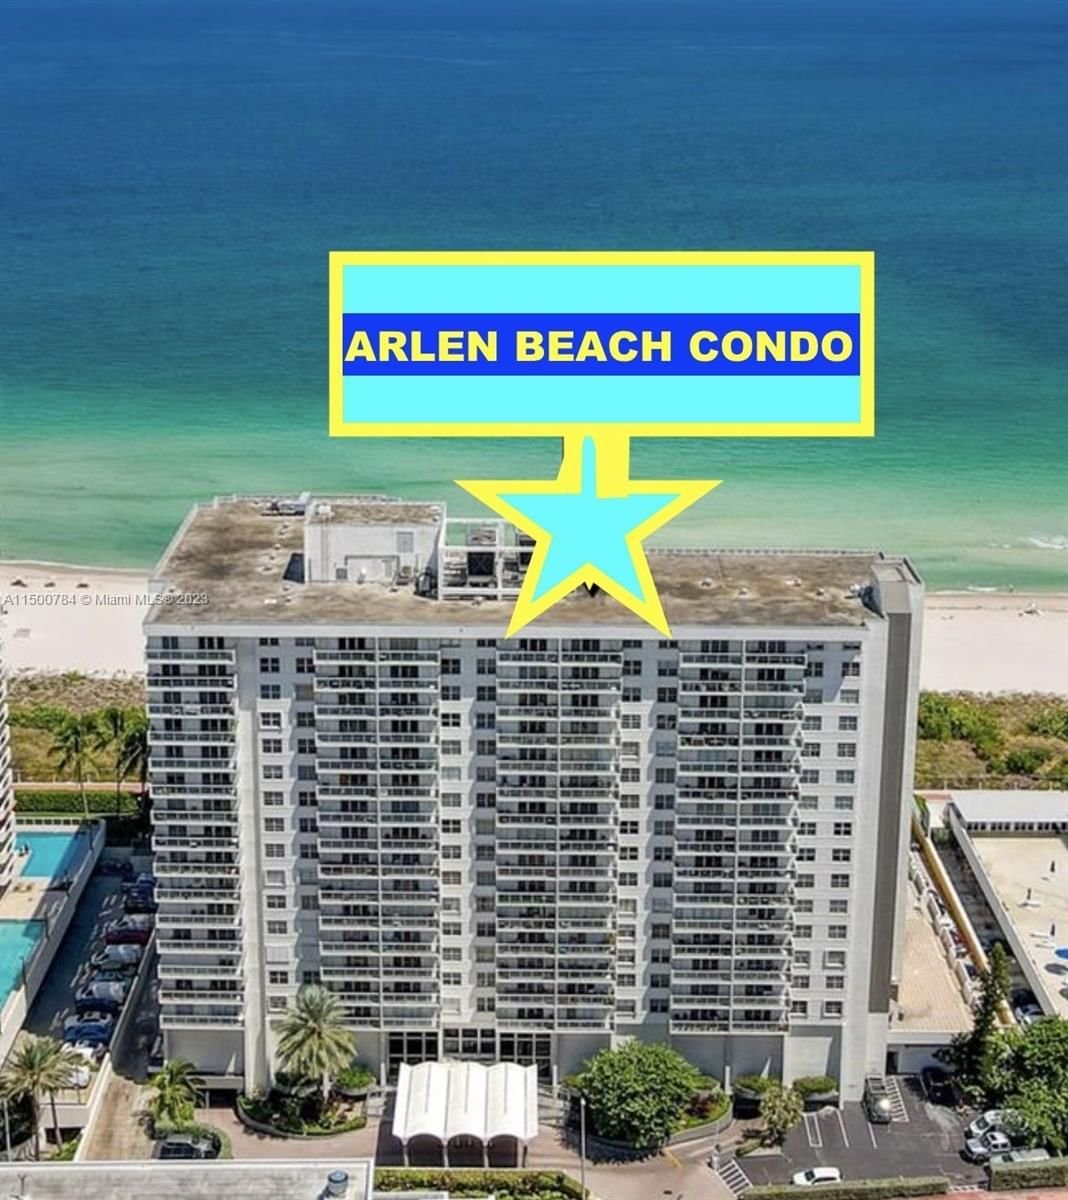 Real estate property located at 5701 Collins Ave #804, Miami-Dade County, ARLEN BEACH CONDO, Miami Beach, FL